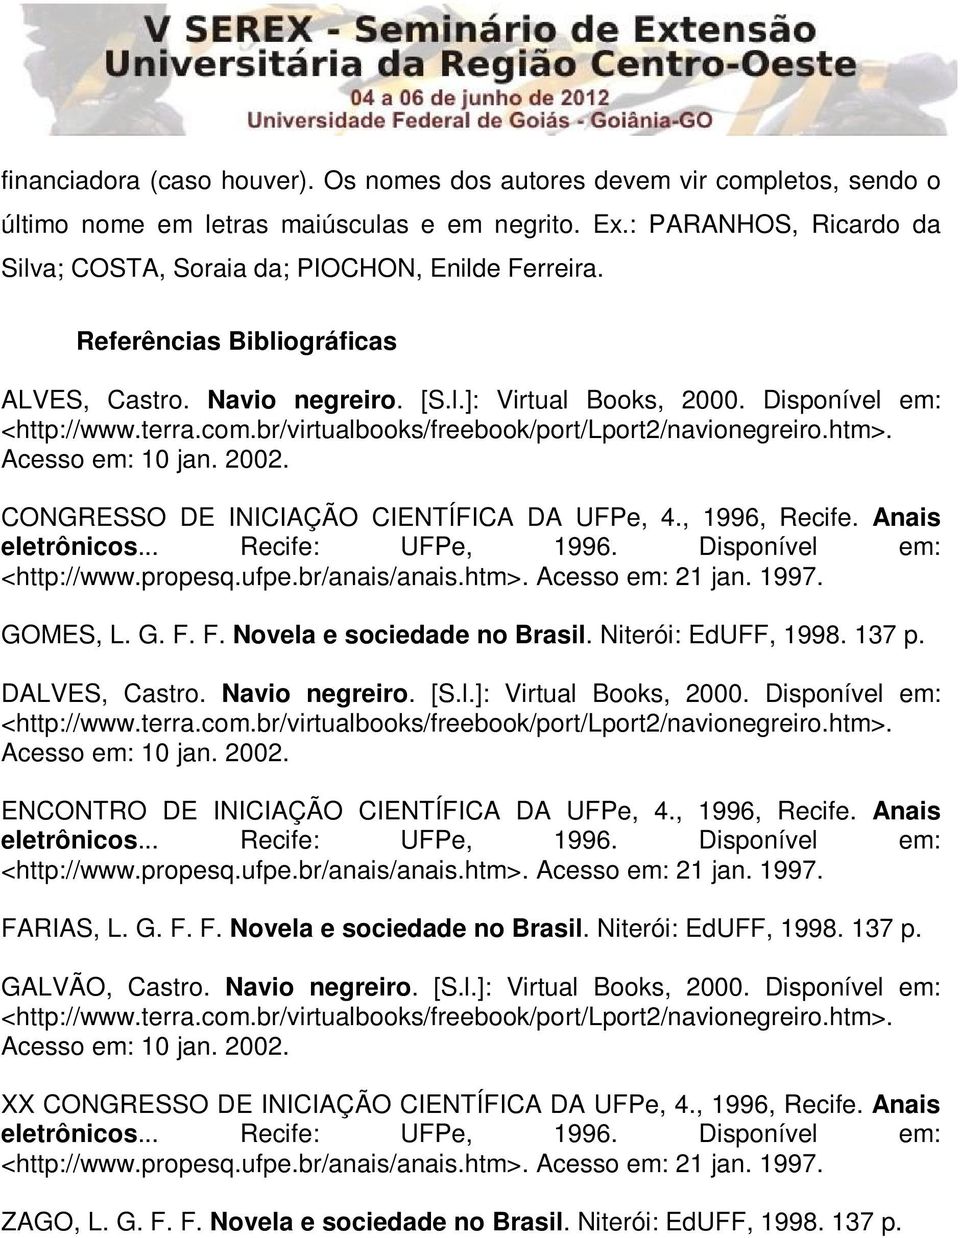 Disponível em: <http://www.propesq.ufpe.br/anais/anais.htm>. Acesso em: 21 jan. 1997. GOMES, L. G. F. F. Novela e sociedade no Brasil. Niterói: EdUFF, 1998. 137 p. DALVES, Castro. Navio negreiro. [S.